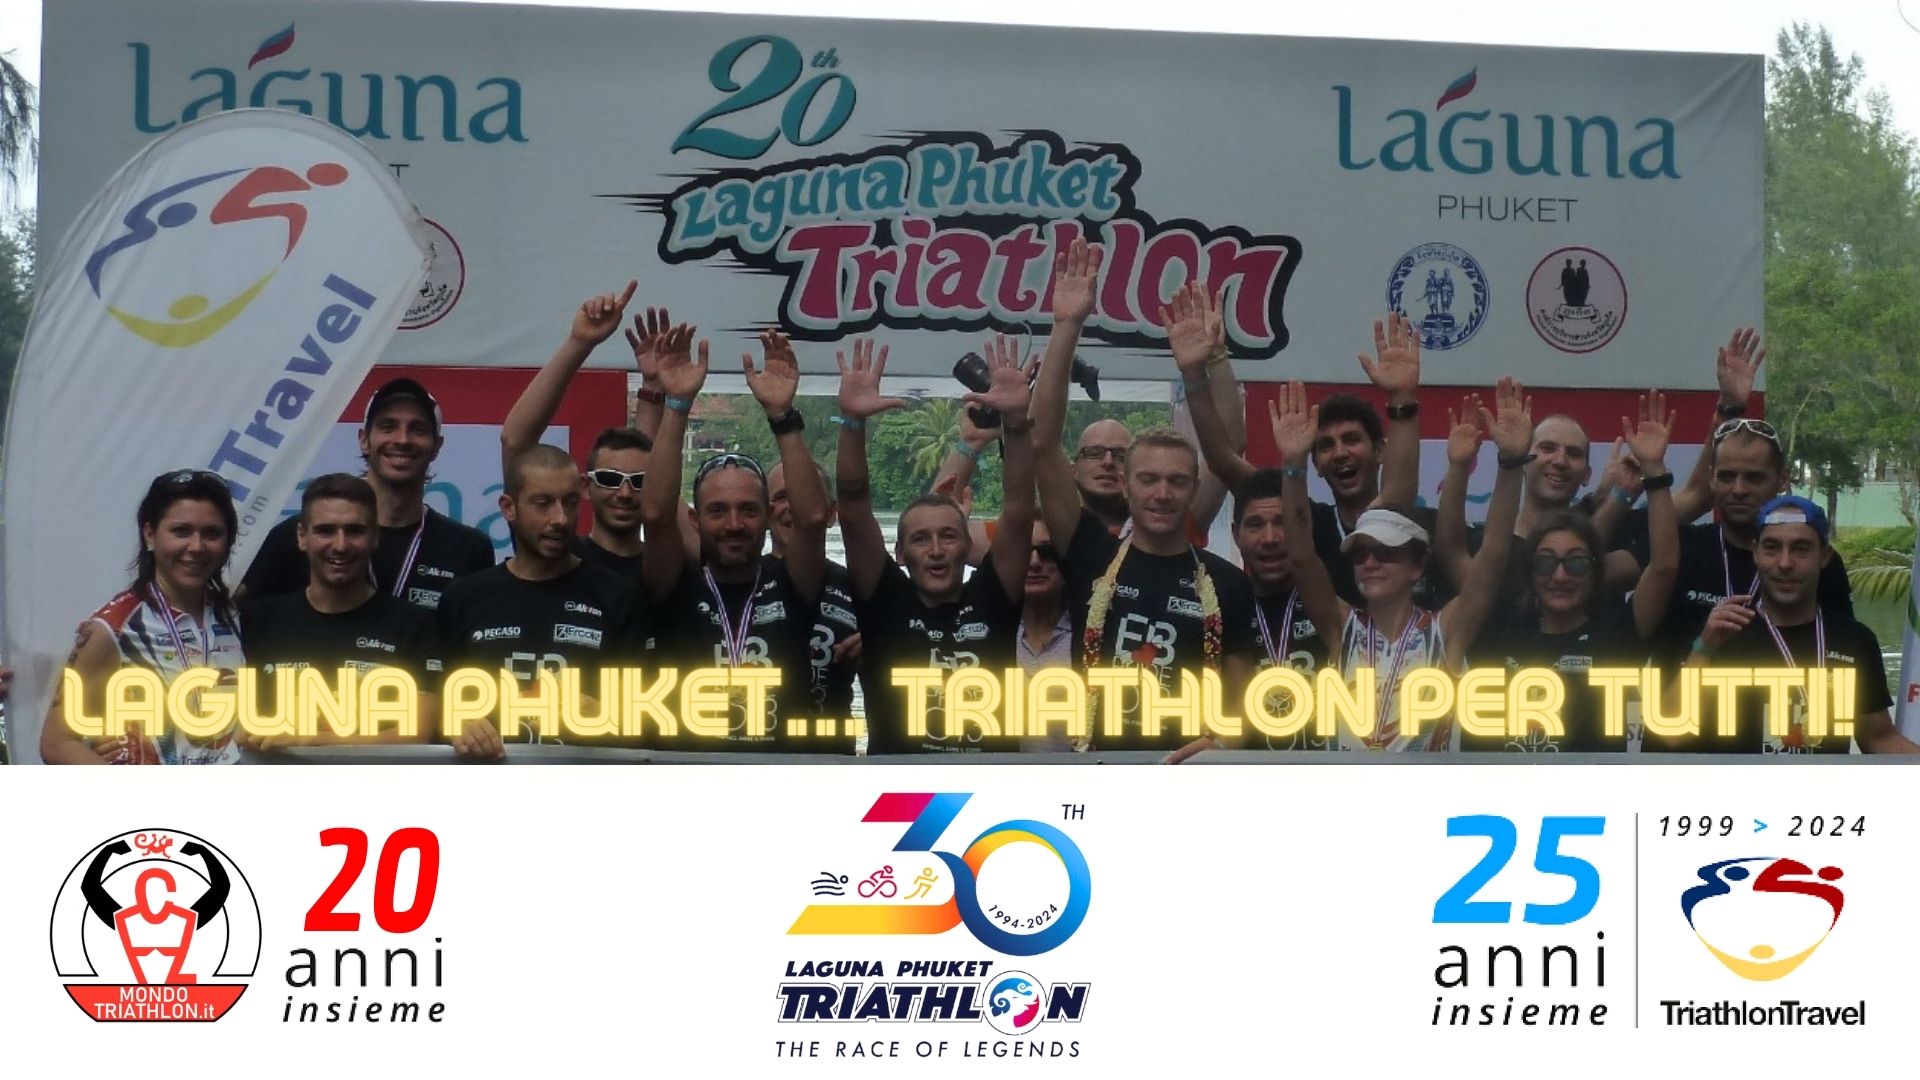 Laguna Phuket Triathlon... per tutti!